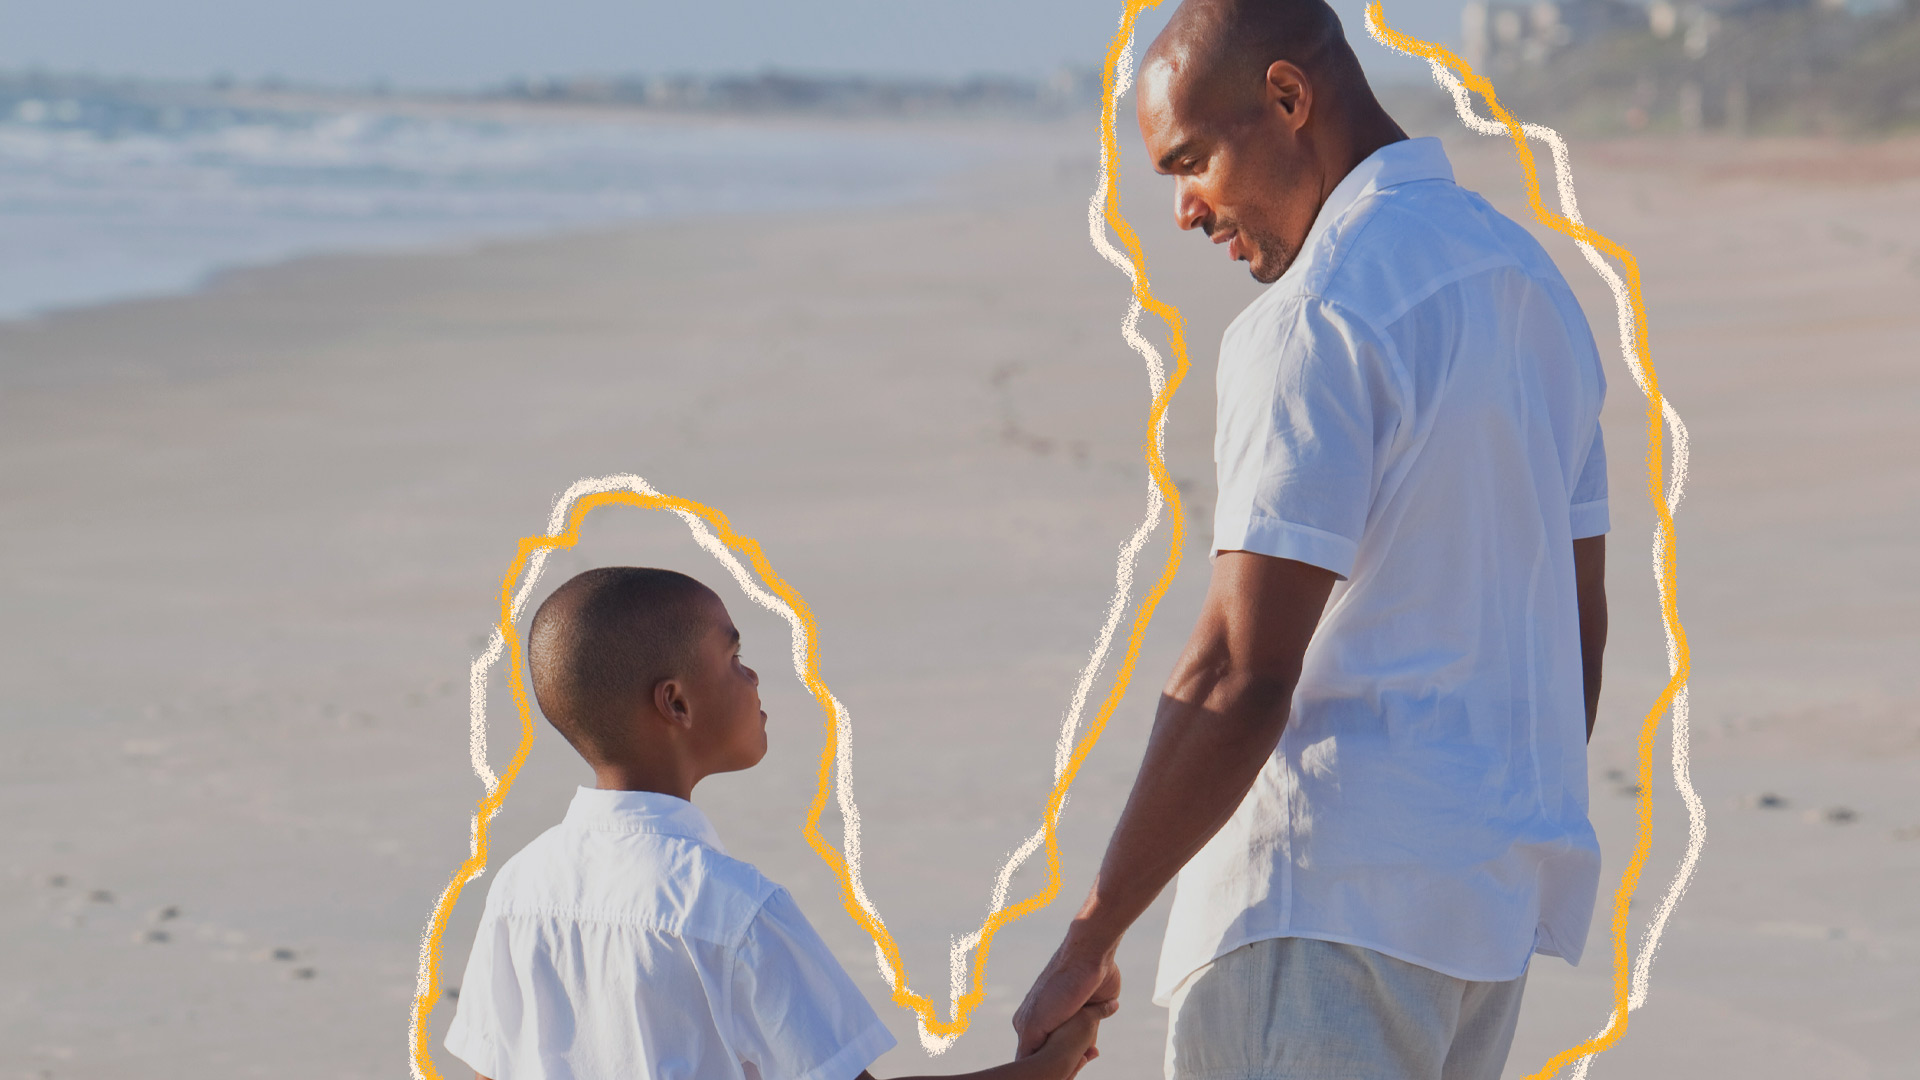 Foto de pai e filho, ambos negros e vestindo roupas claras, na praia, se olham e se dão as mãos, sugerindo que negociar com a criança precisa ser um acordo mútuo, de escuta atenta.